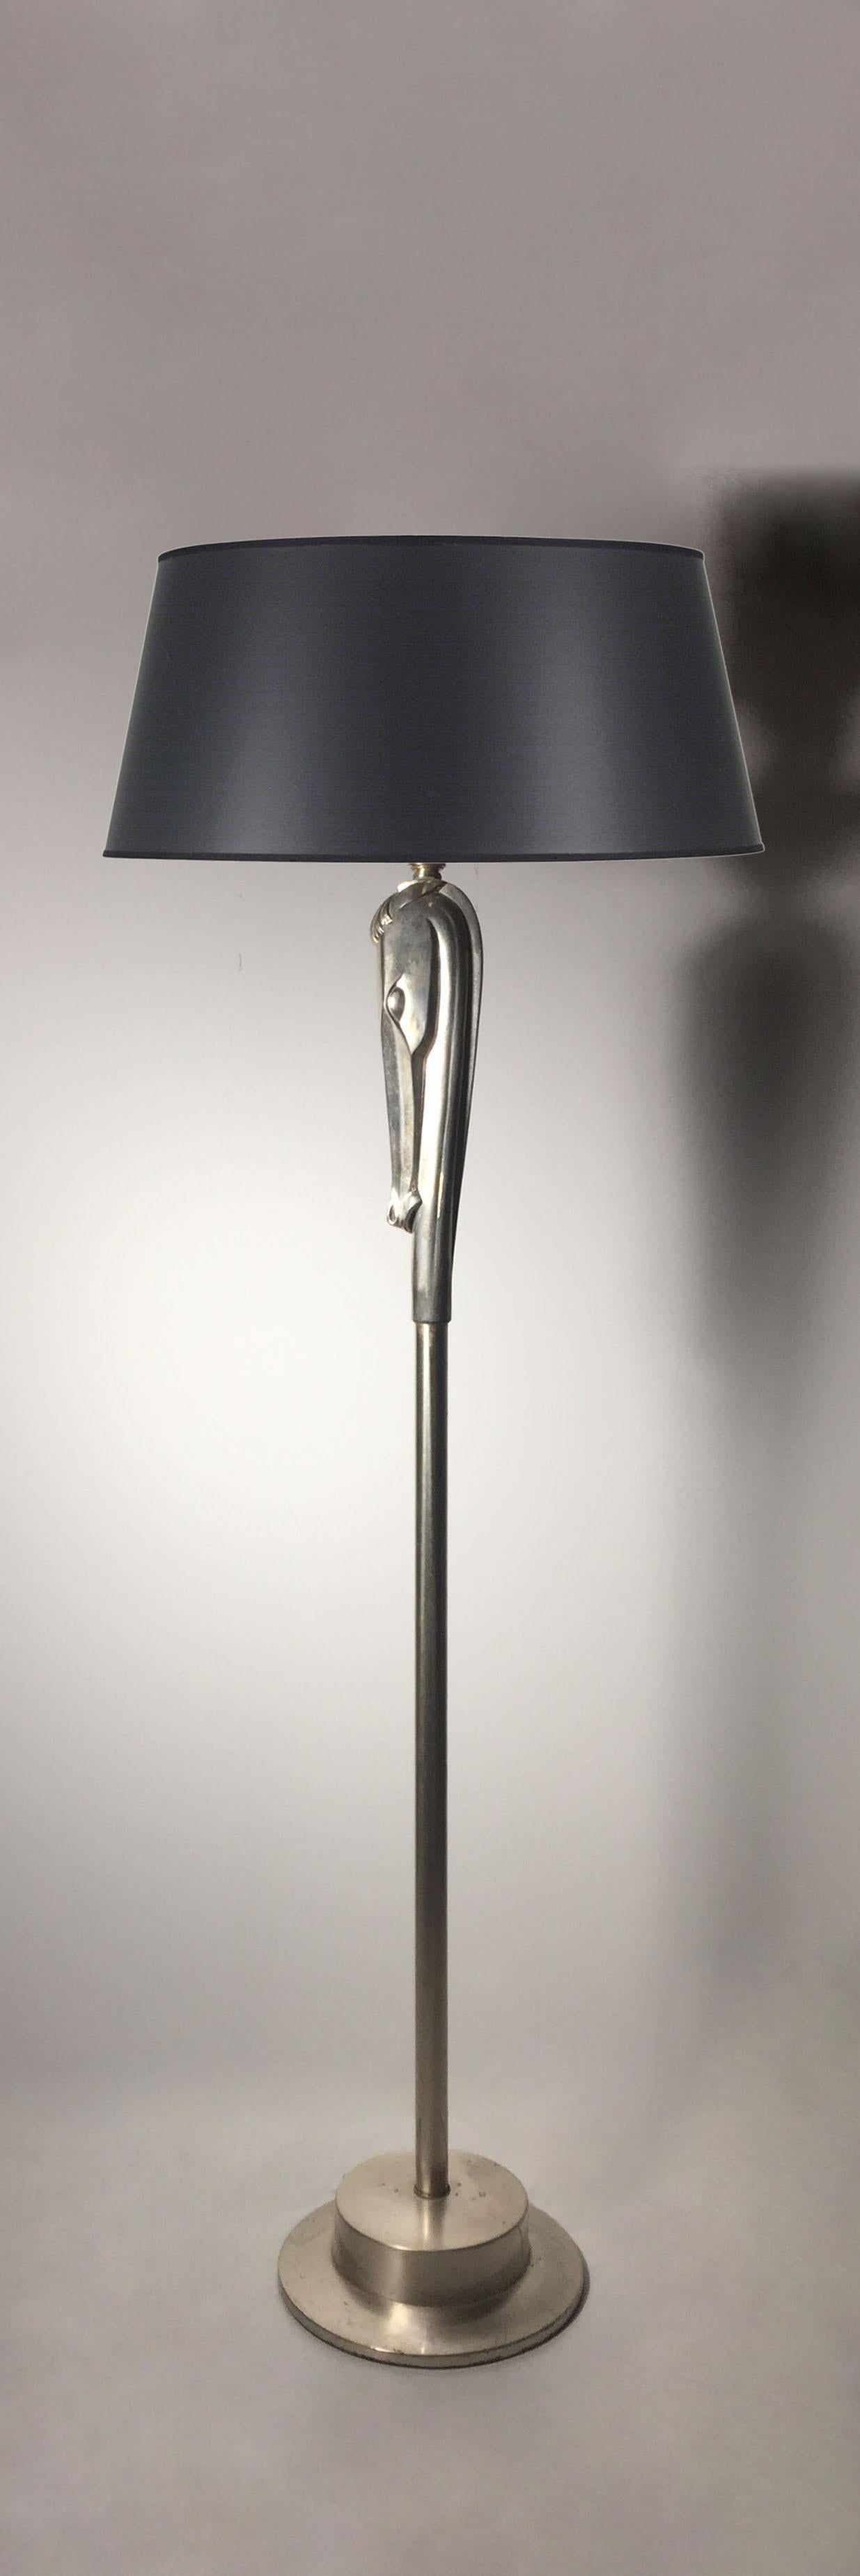 Deco / Mid-Century Lampe von Colonial Lamp Company.  Surreale Pferdelampe, Victor Schreckengost zugeschrieben